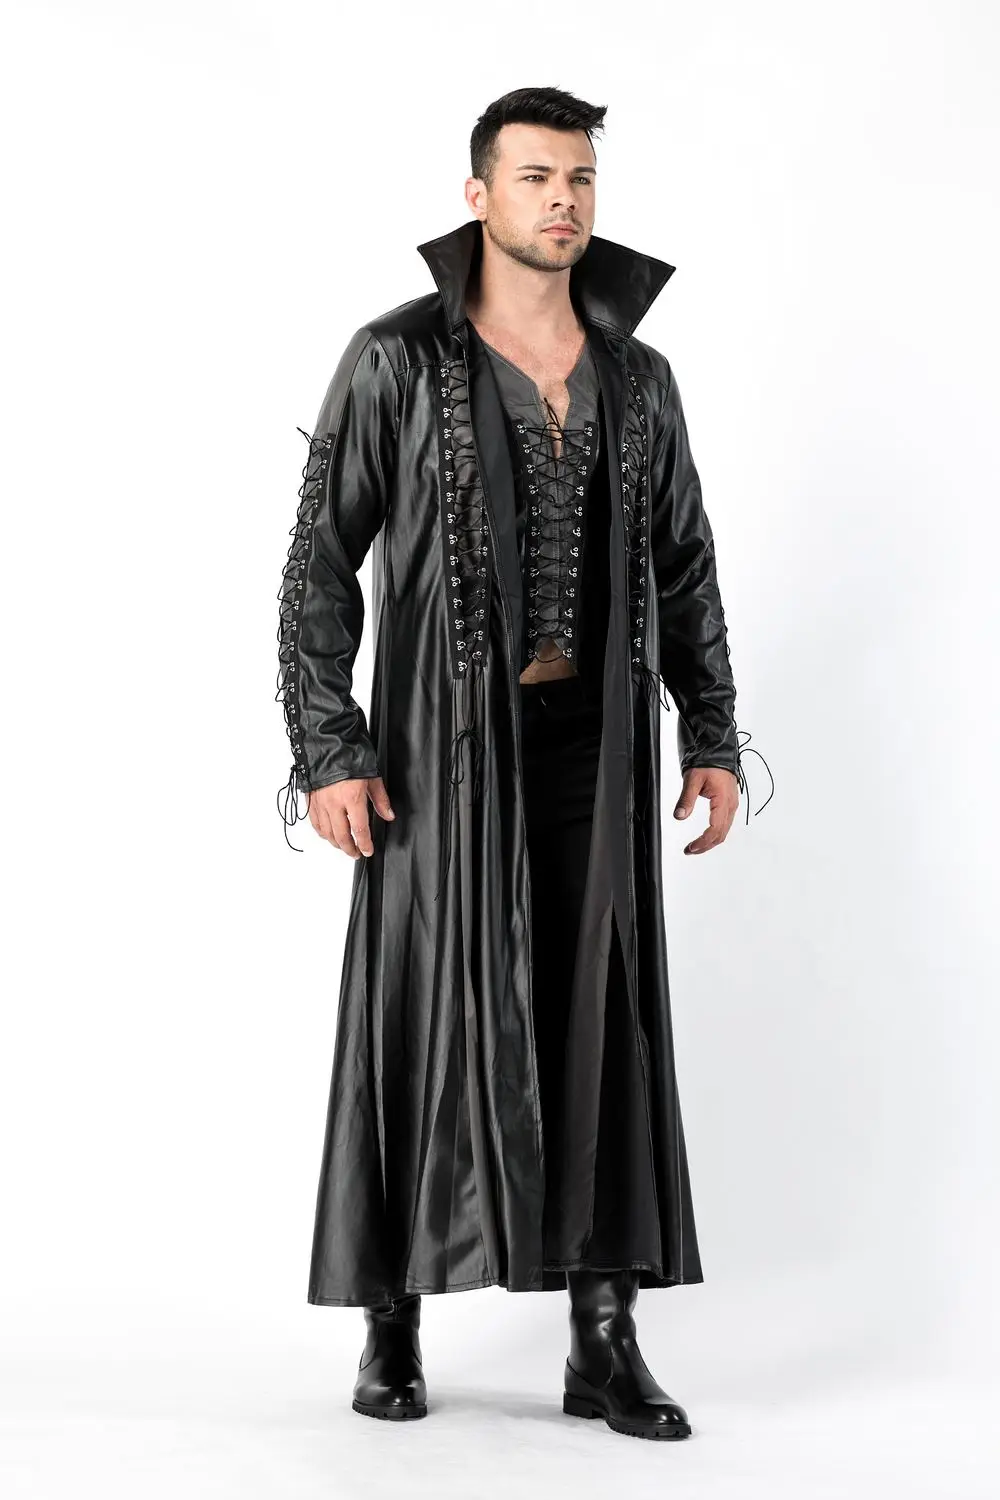 Готический костюм вампира, мужские кожаные костюмы на Хэллоуин, матричный имперский костюм вампира, мужской маскарад, вечеринка, Хэллоуин, косплей